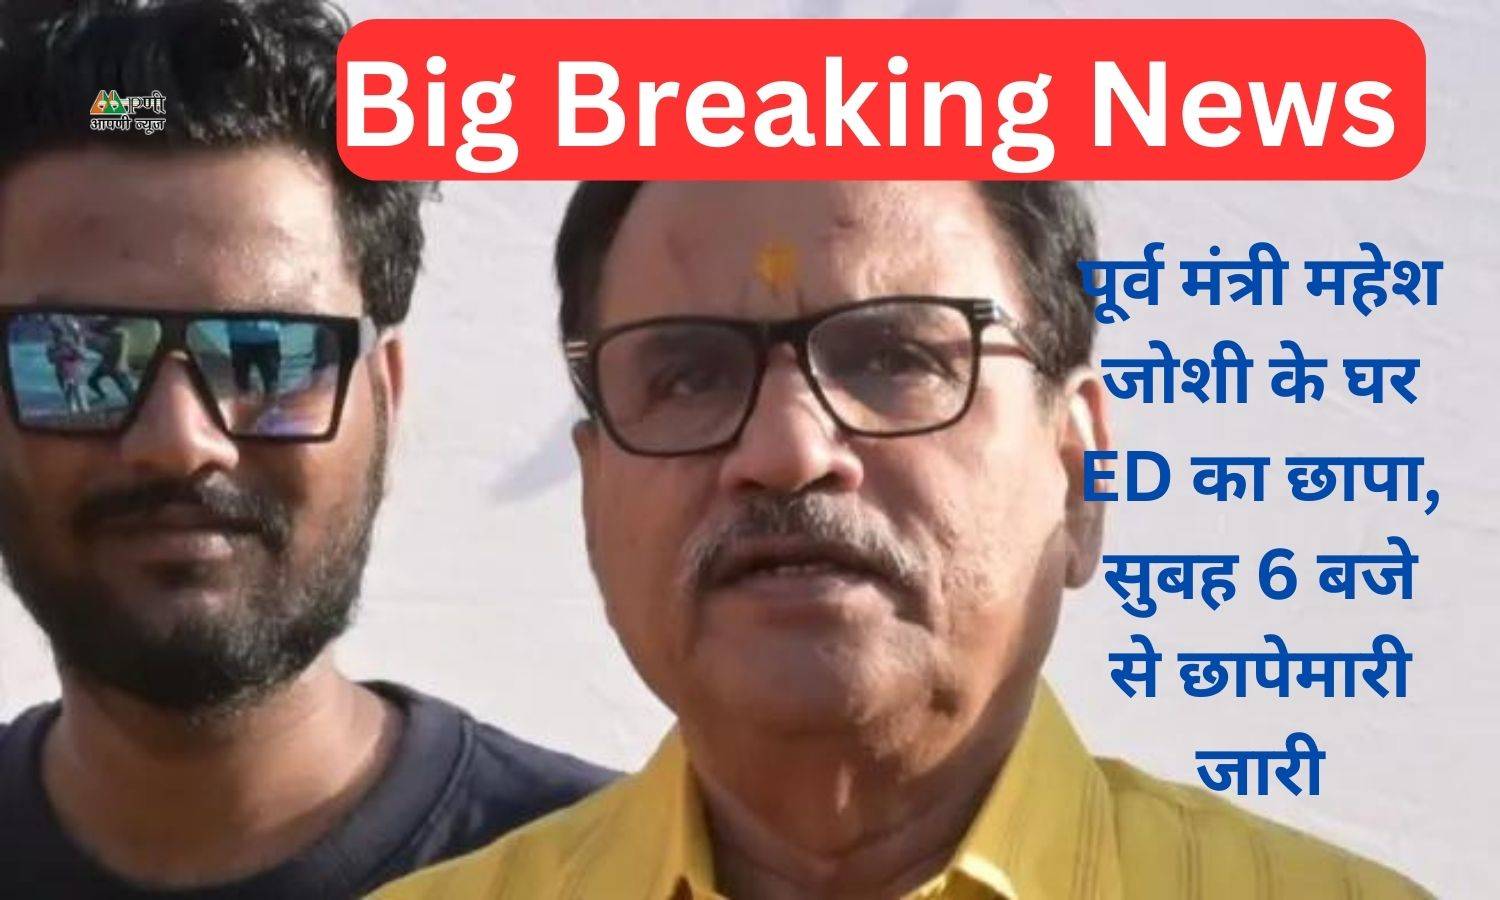 Big Breaking News: पूर्व मंत्री महेश जोशी के घर ED का छापा, सुबह 6 बजे से छापेमारी जारी